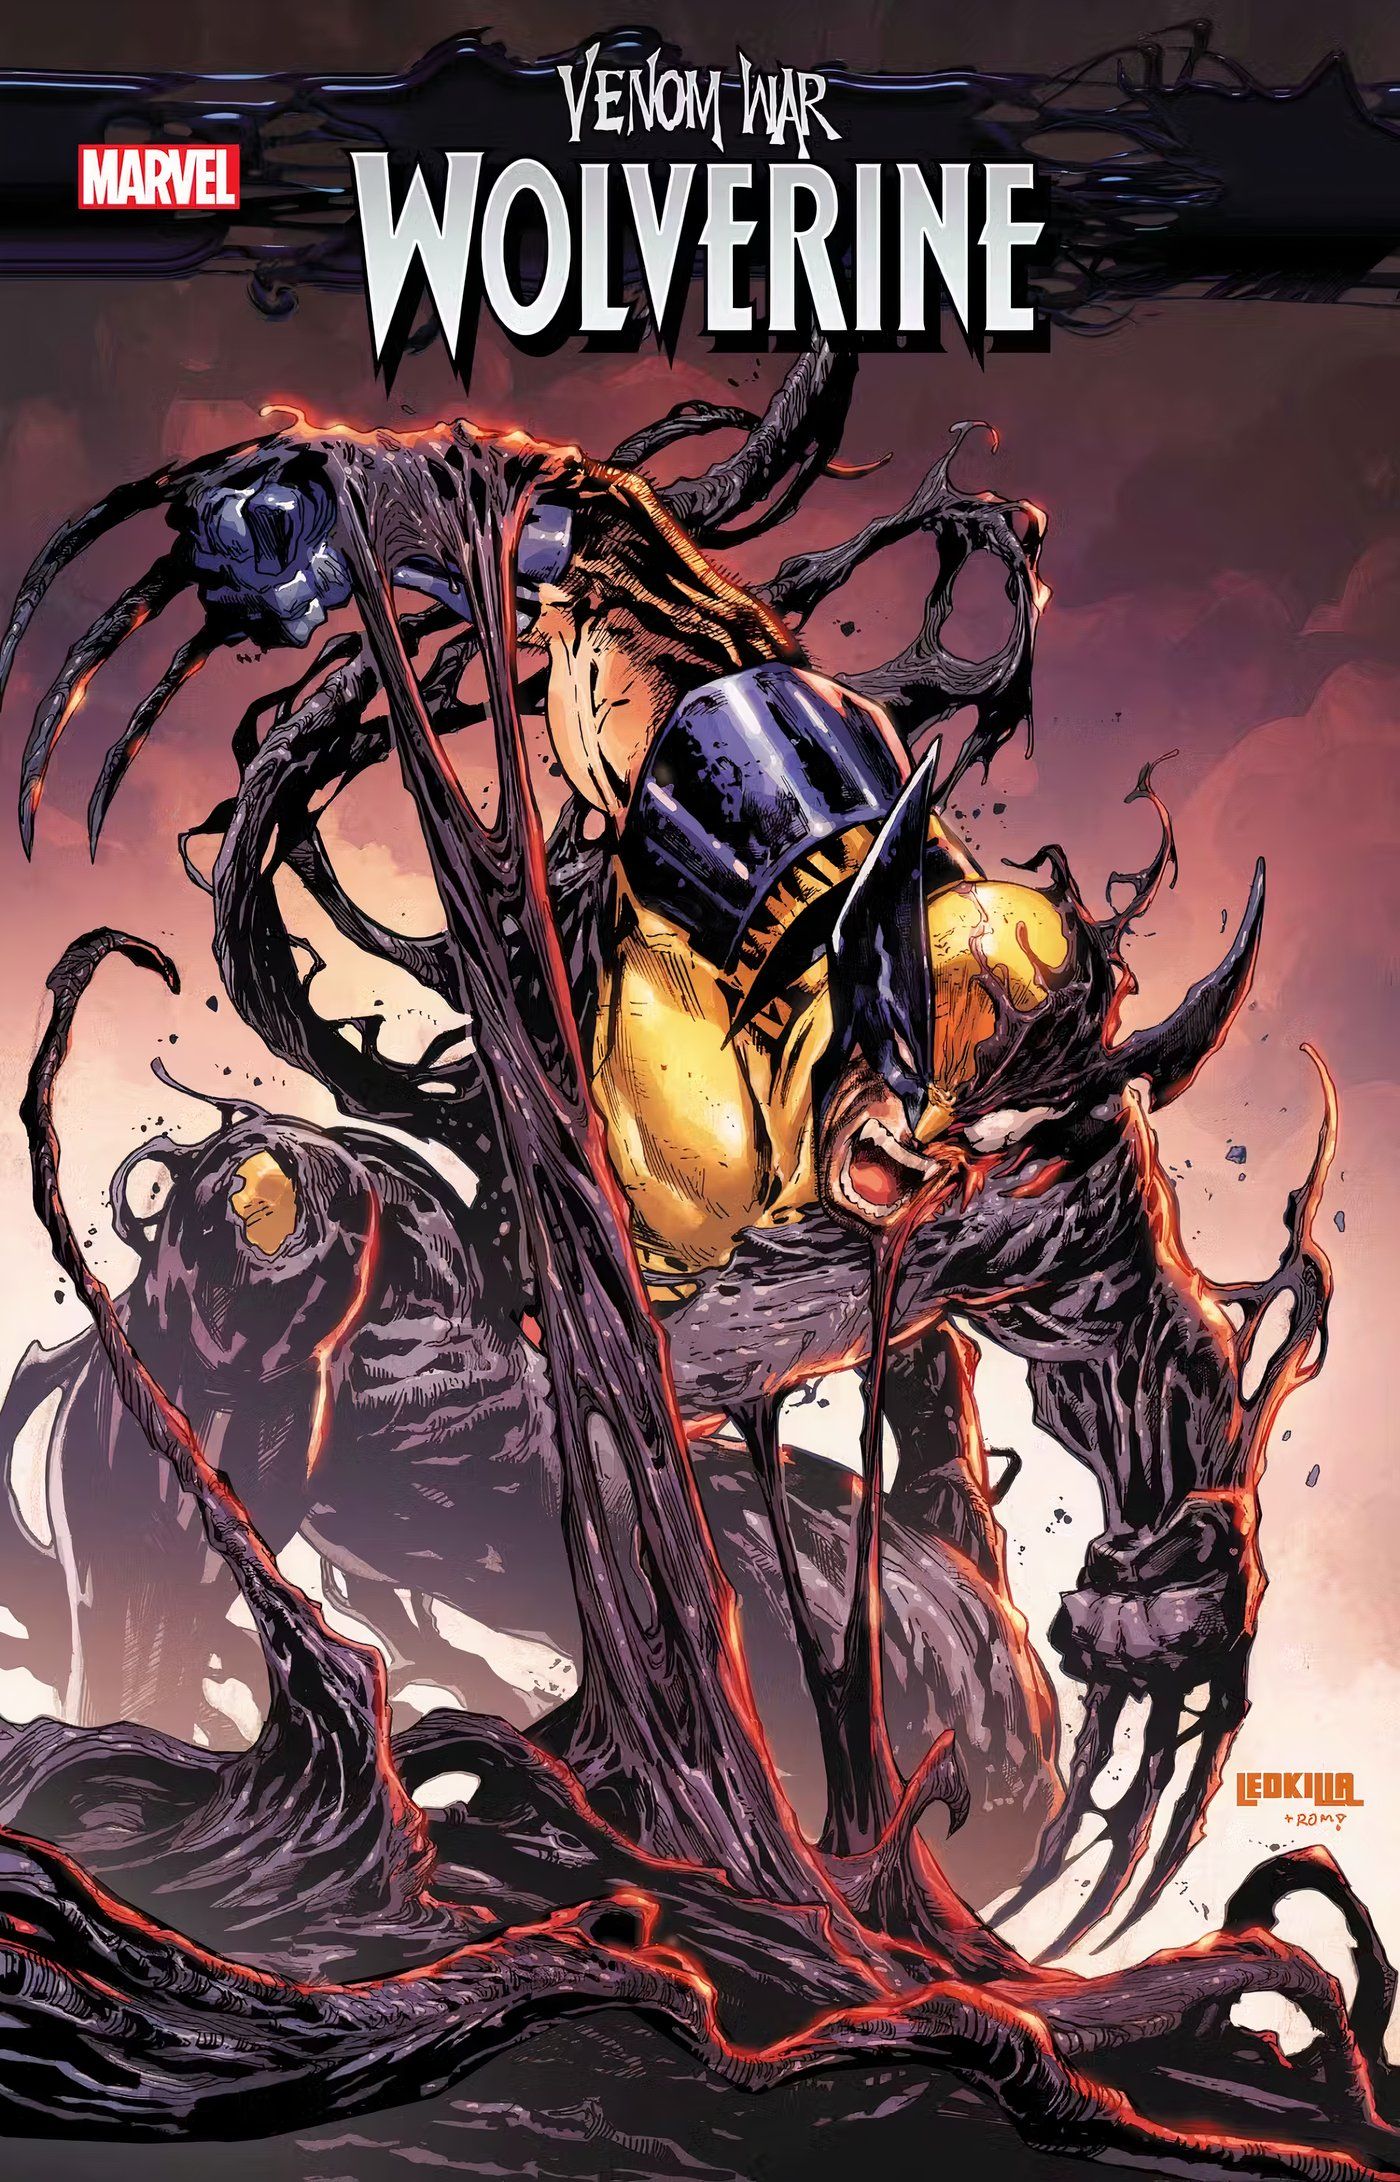 Venom War: Wolverine #1, Wolverine krzywi się, gdy symbiont łączy się z nim.